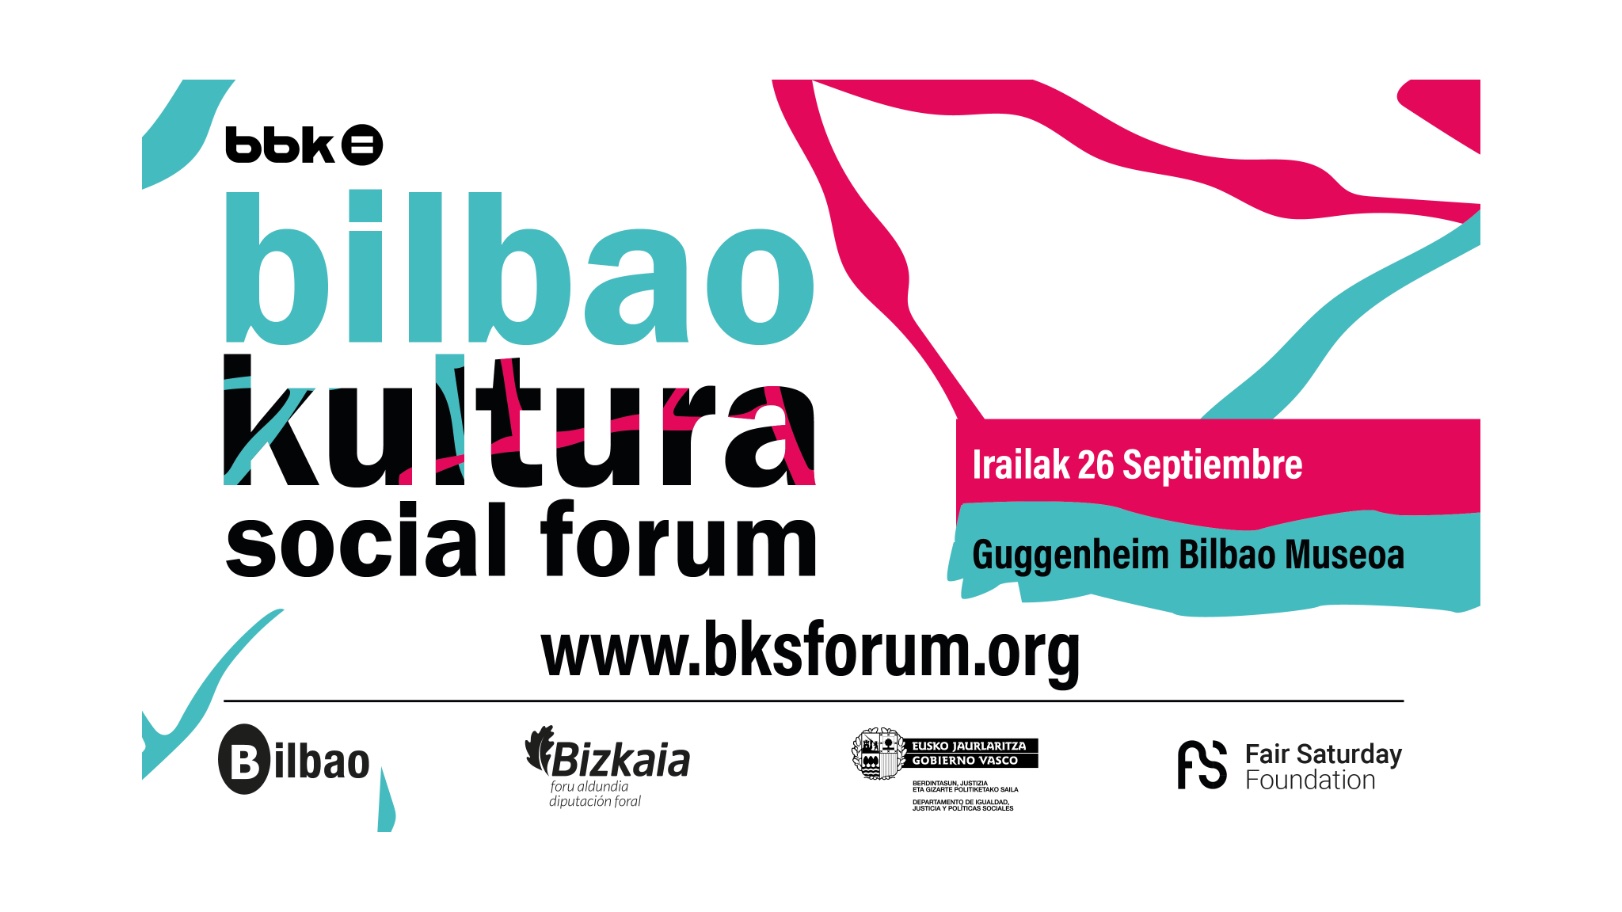 social forum bbk new